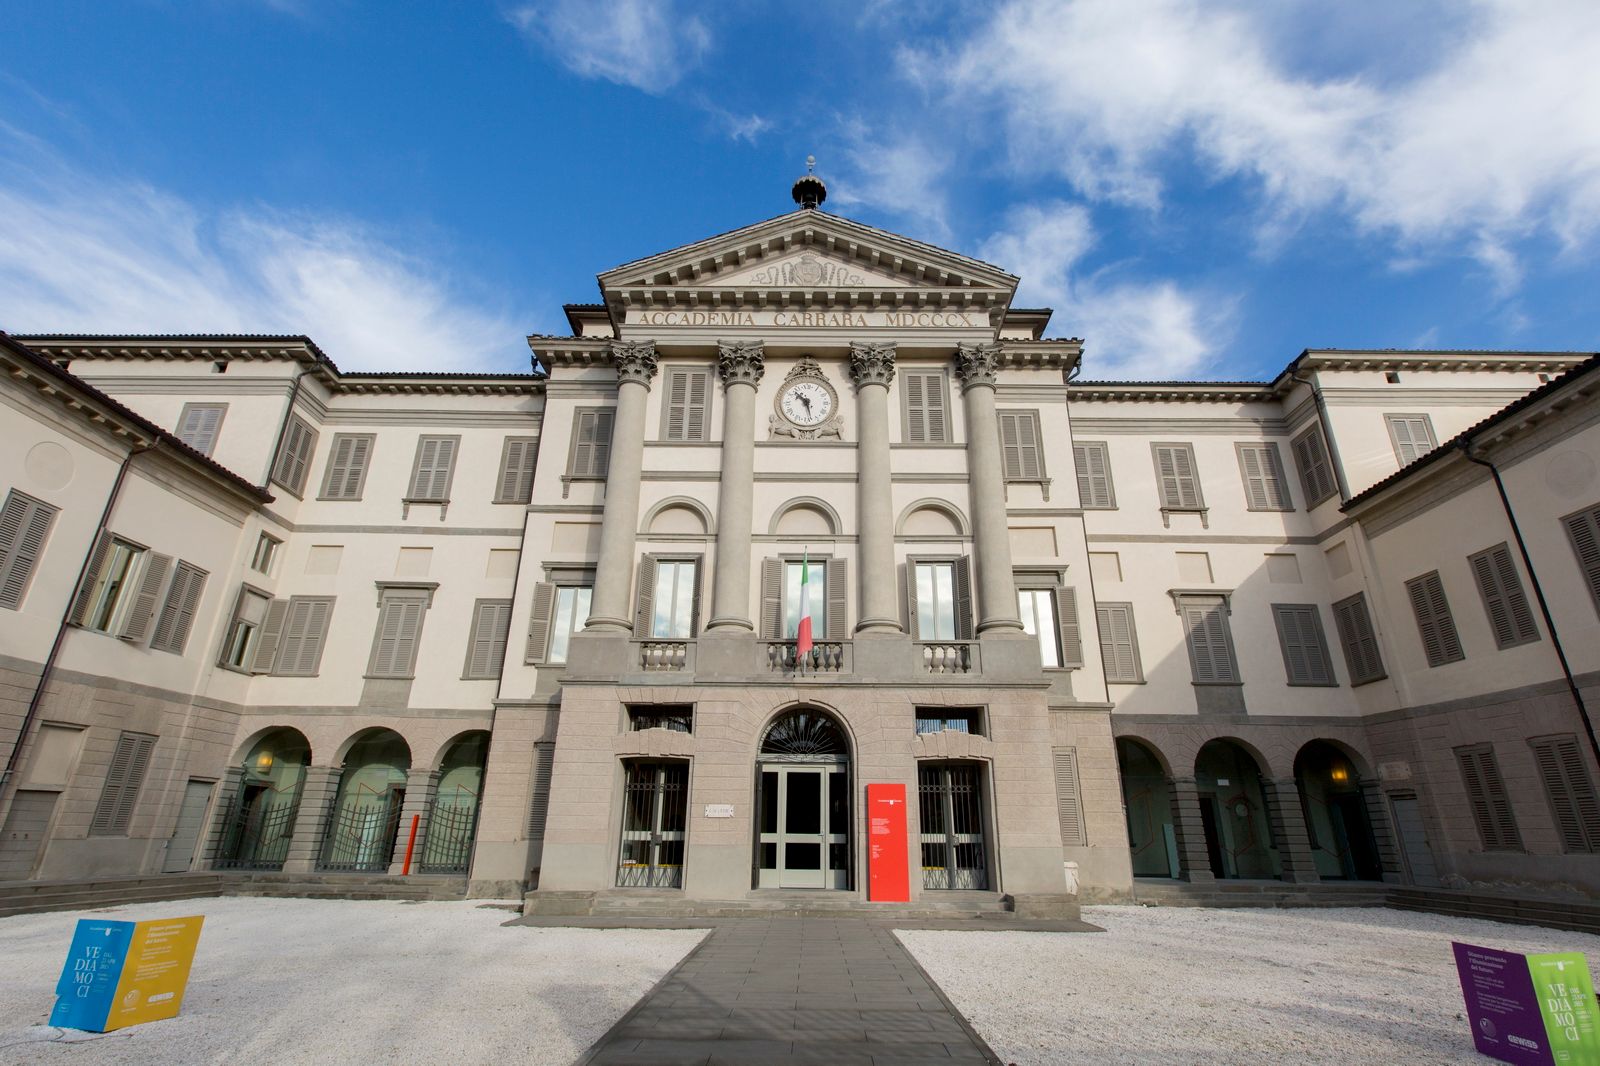 Novità per l’Accademia Carrara: recupero dei giardini, nuovo partner, rinnovamento allestimento